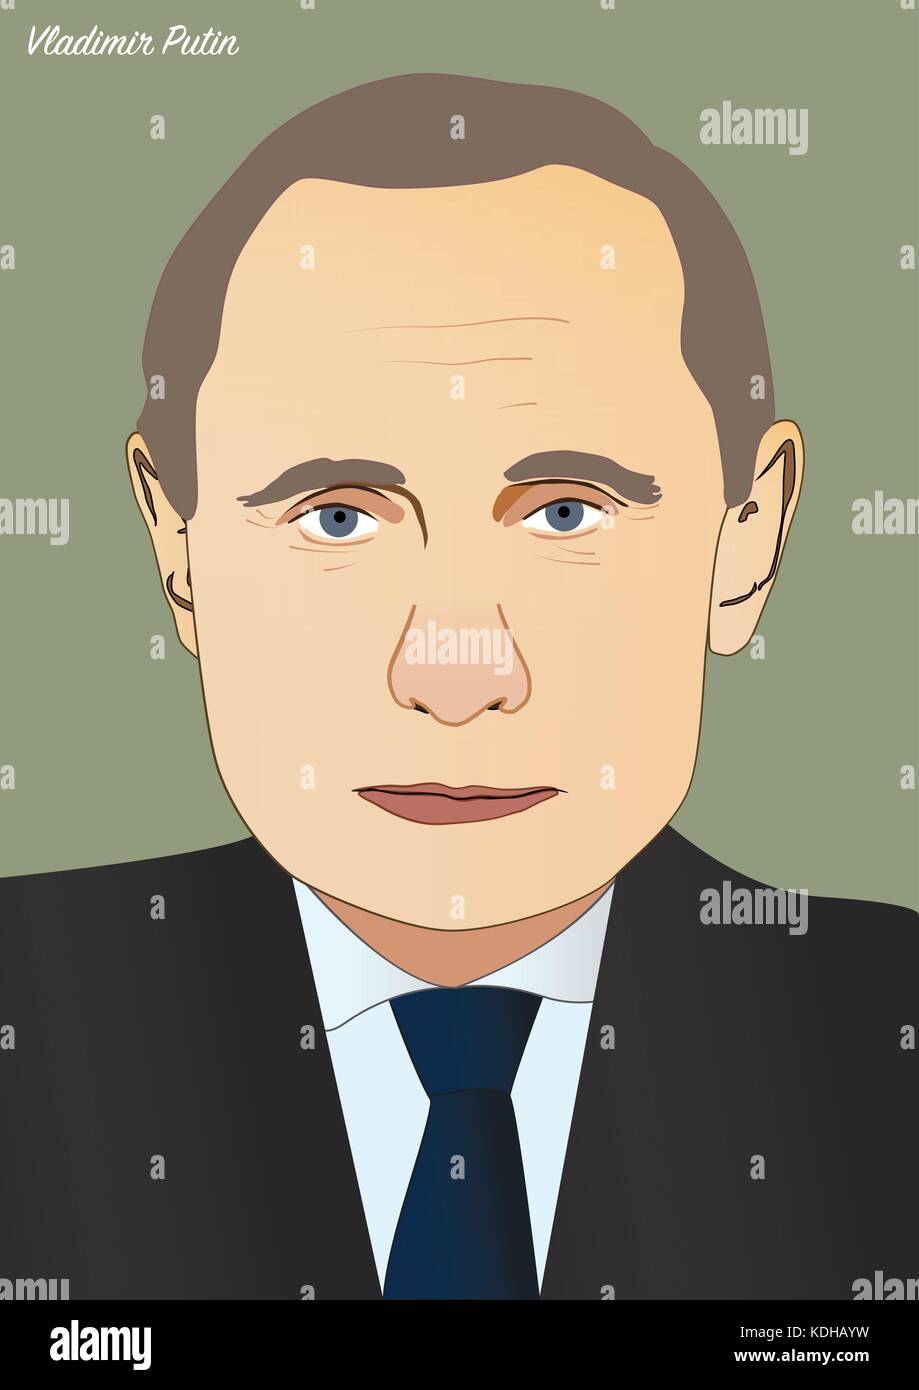 Kiev - Ucraina - 14 ottobre 2017: vettore ritratto di Vladimir Putin, presidente della Federazione russa Illustrazione Vettoriale